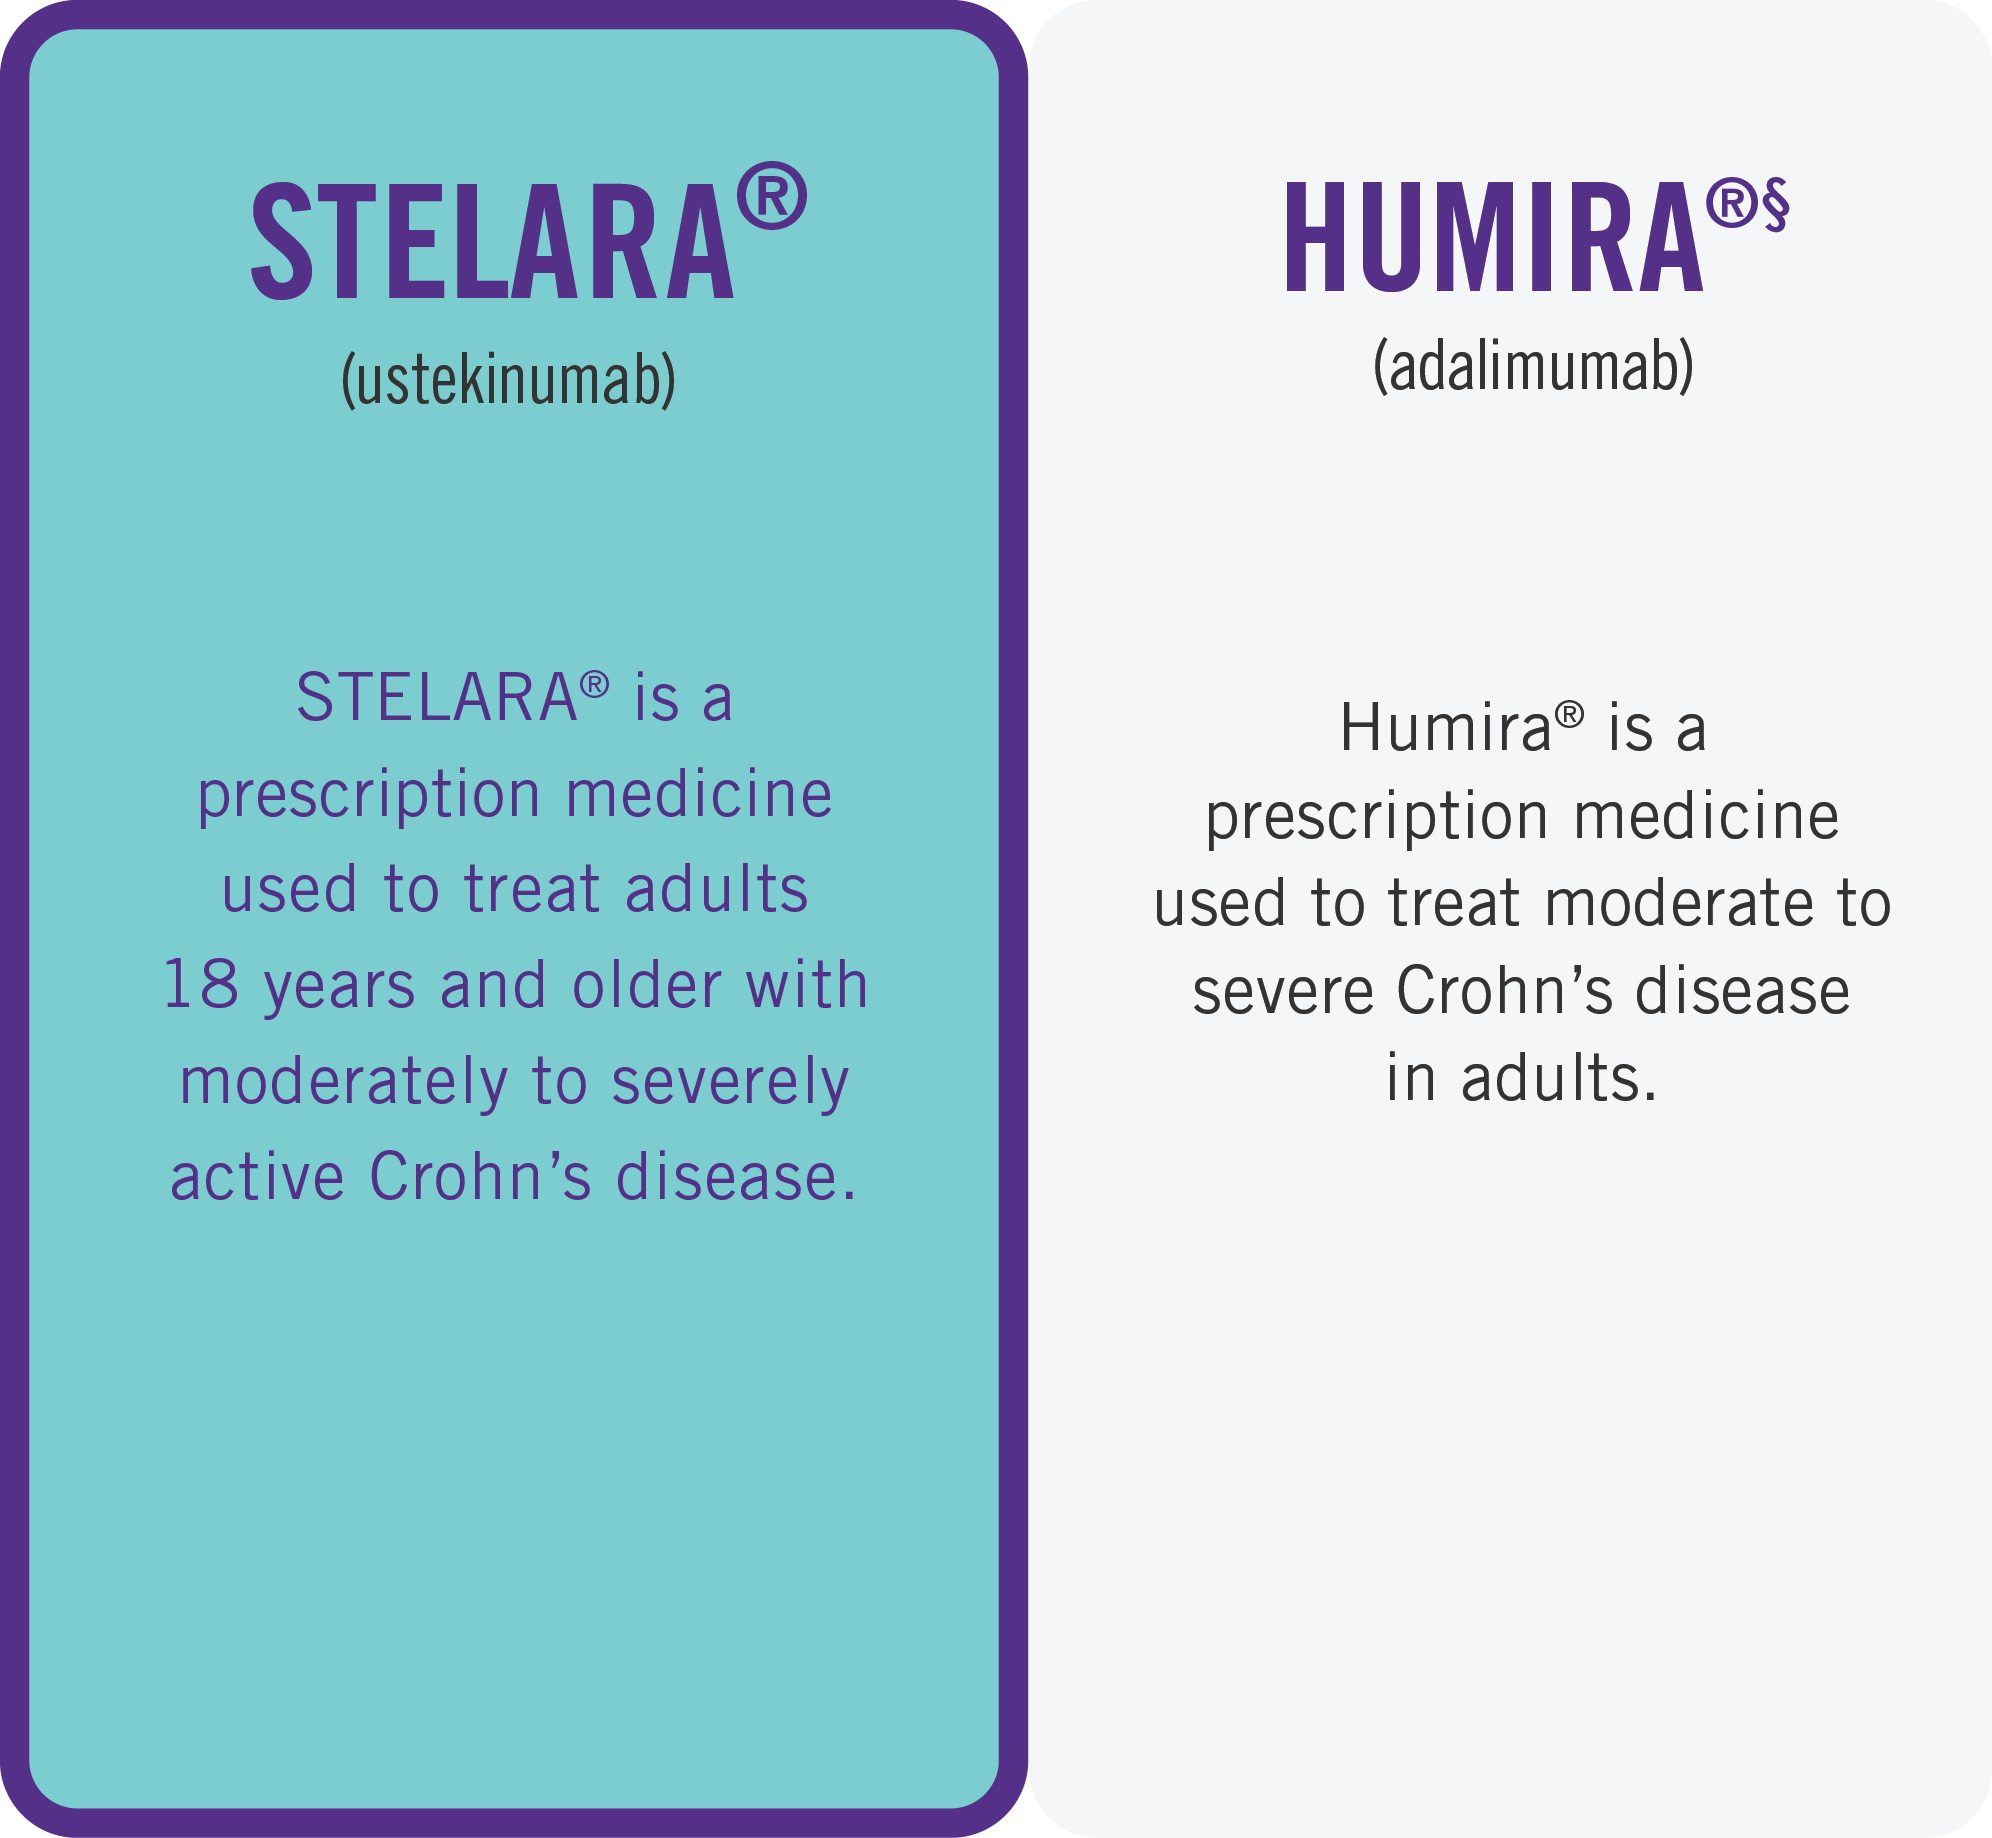 Indication difference of STELARA® (ustekinumab) compared to HUMIRA® (adalimumab)